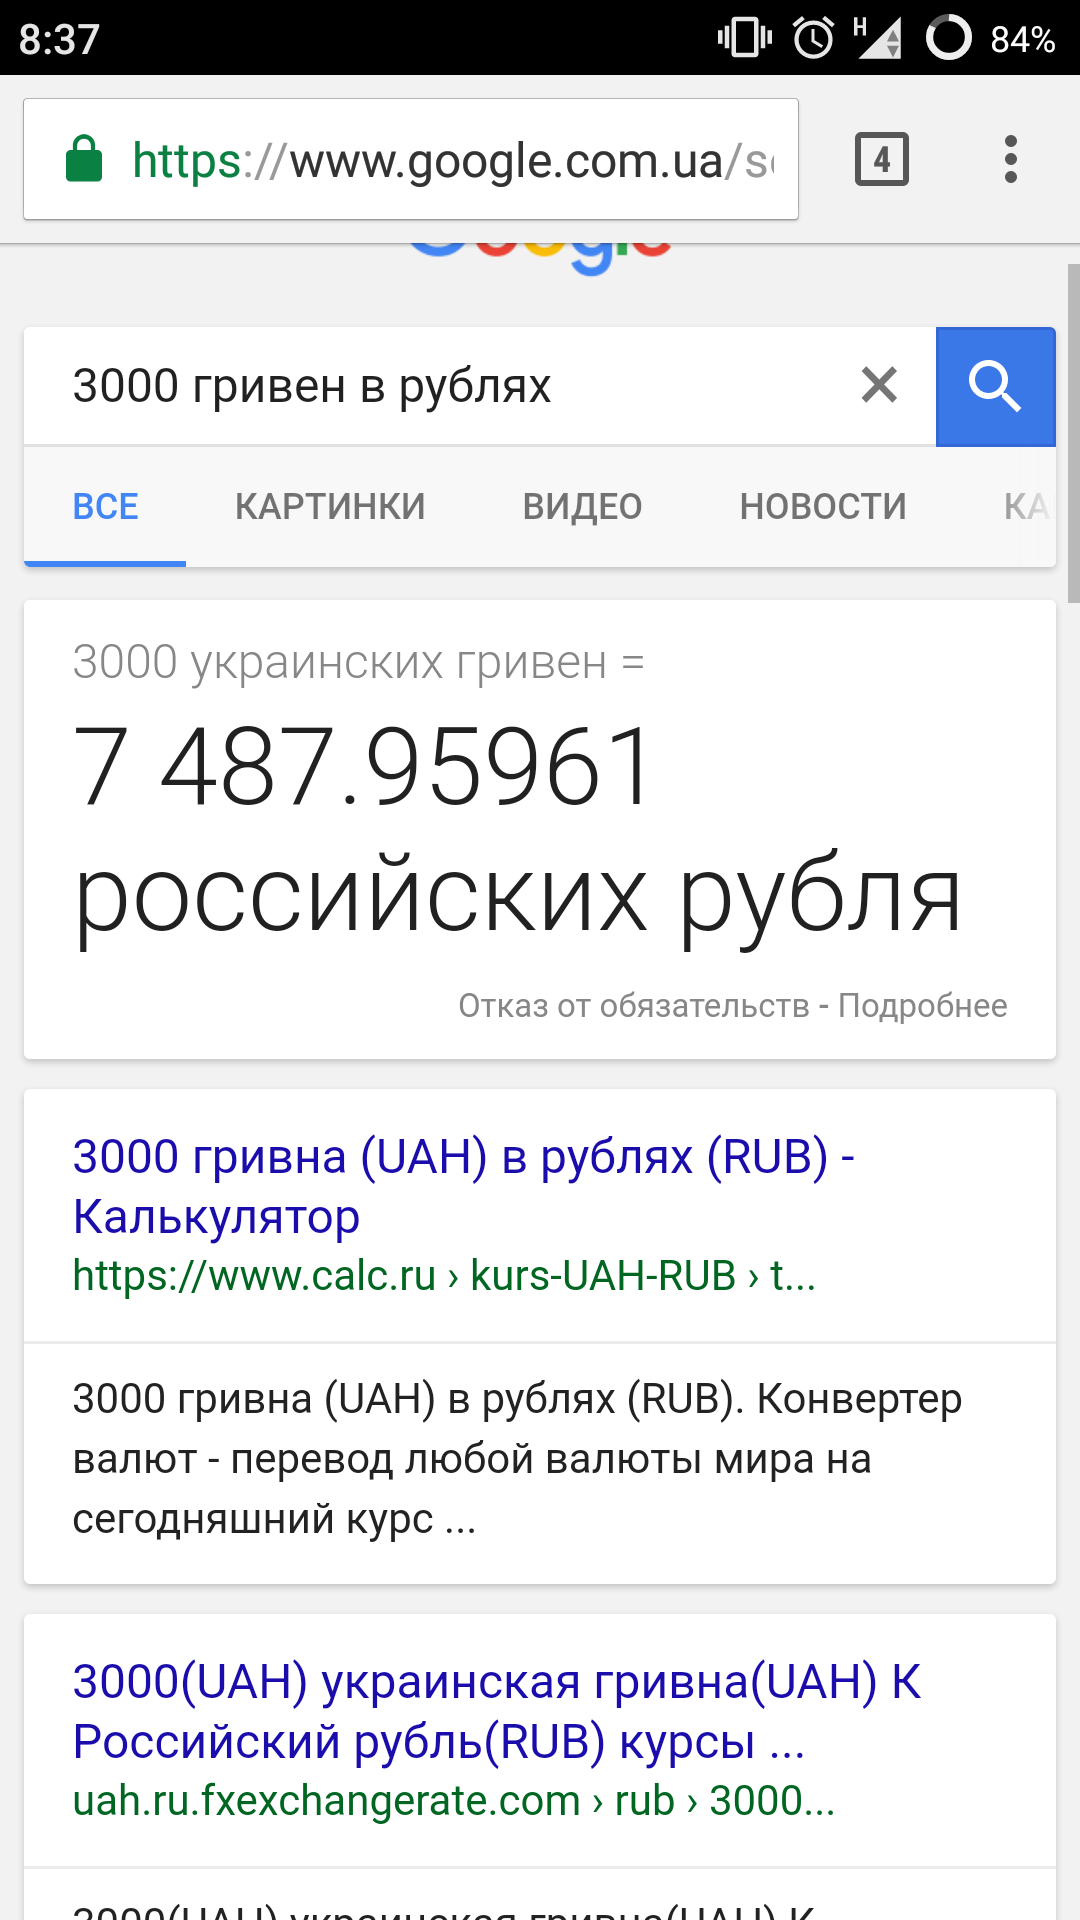 1 миллион гривен в рублях